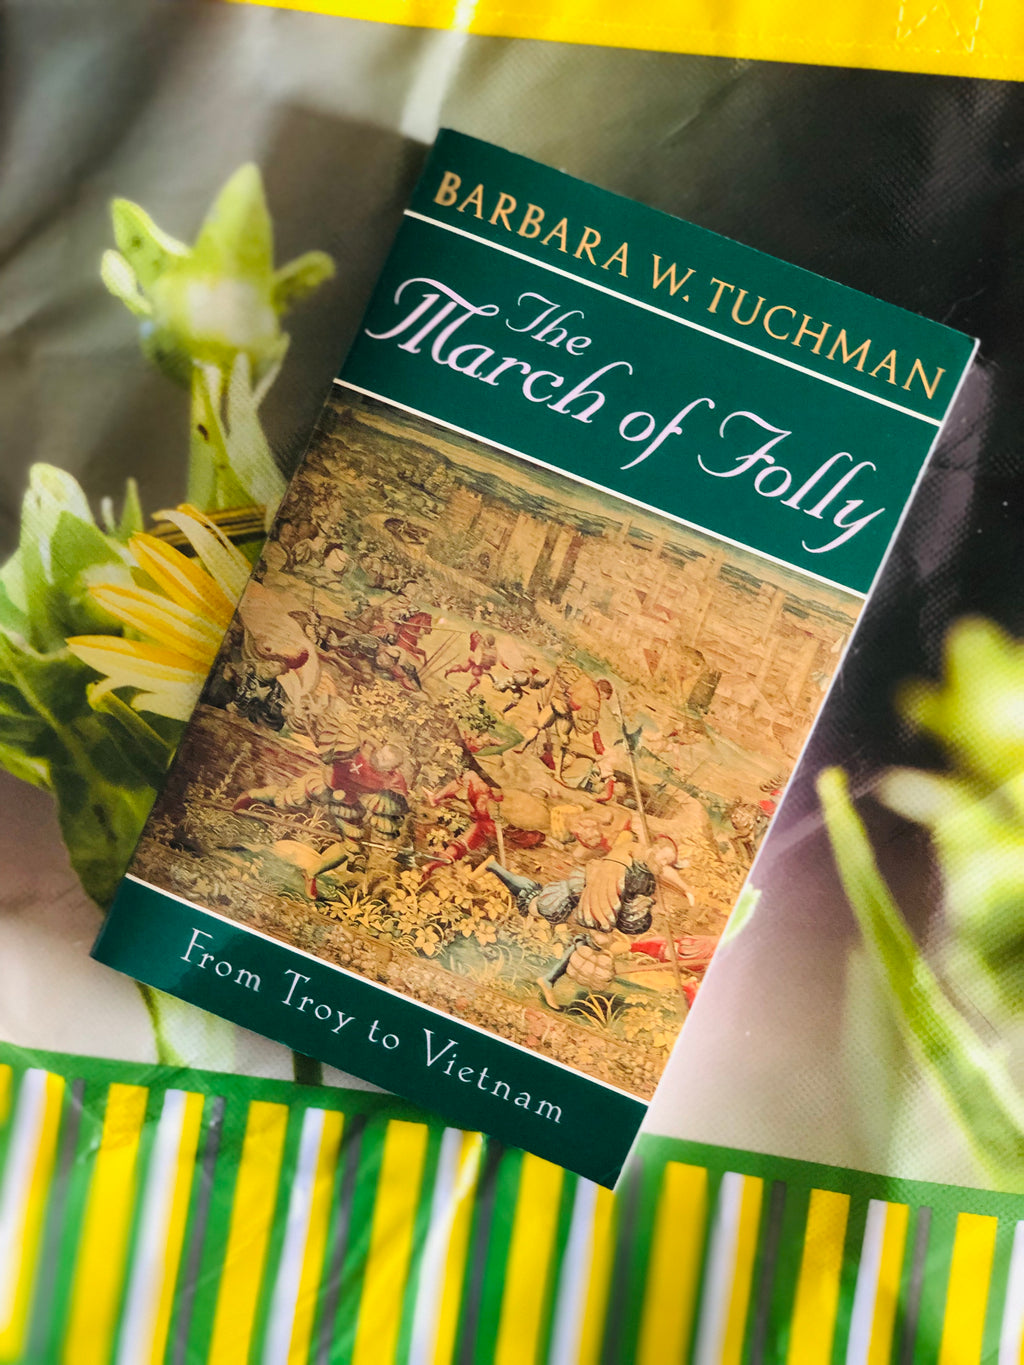 The March of Folly- By Barbara W. Tuchman